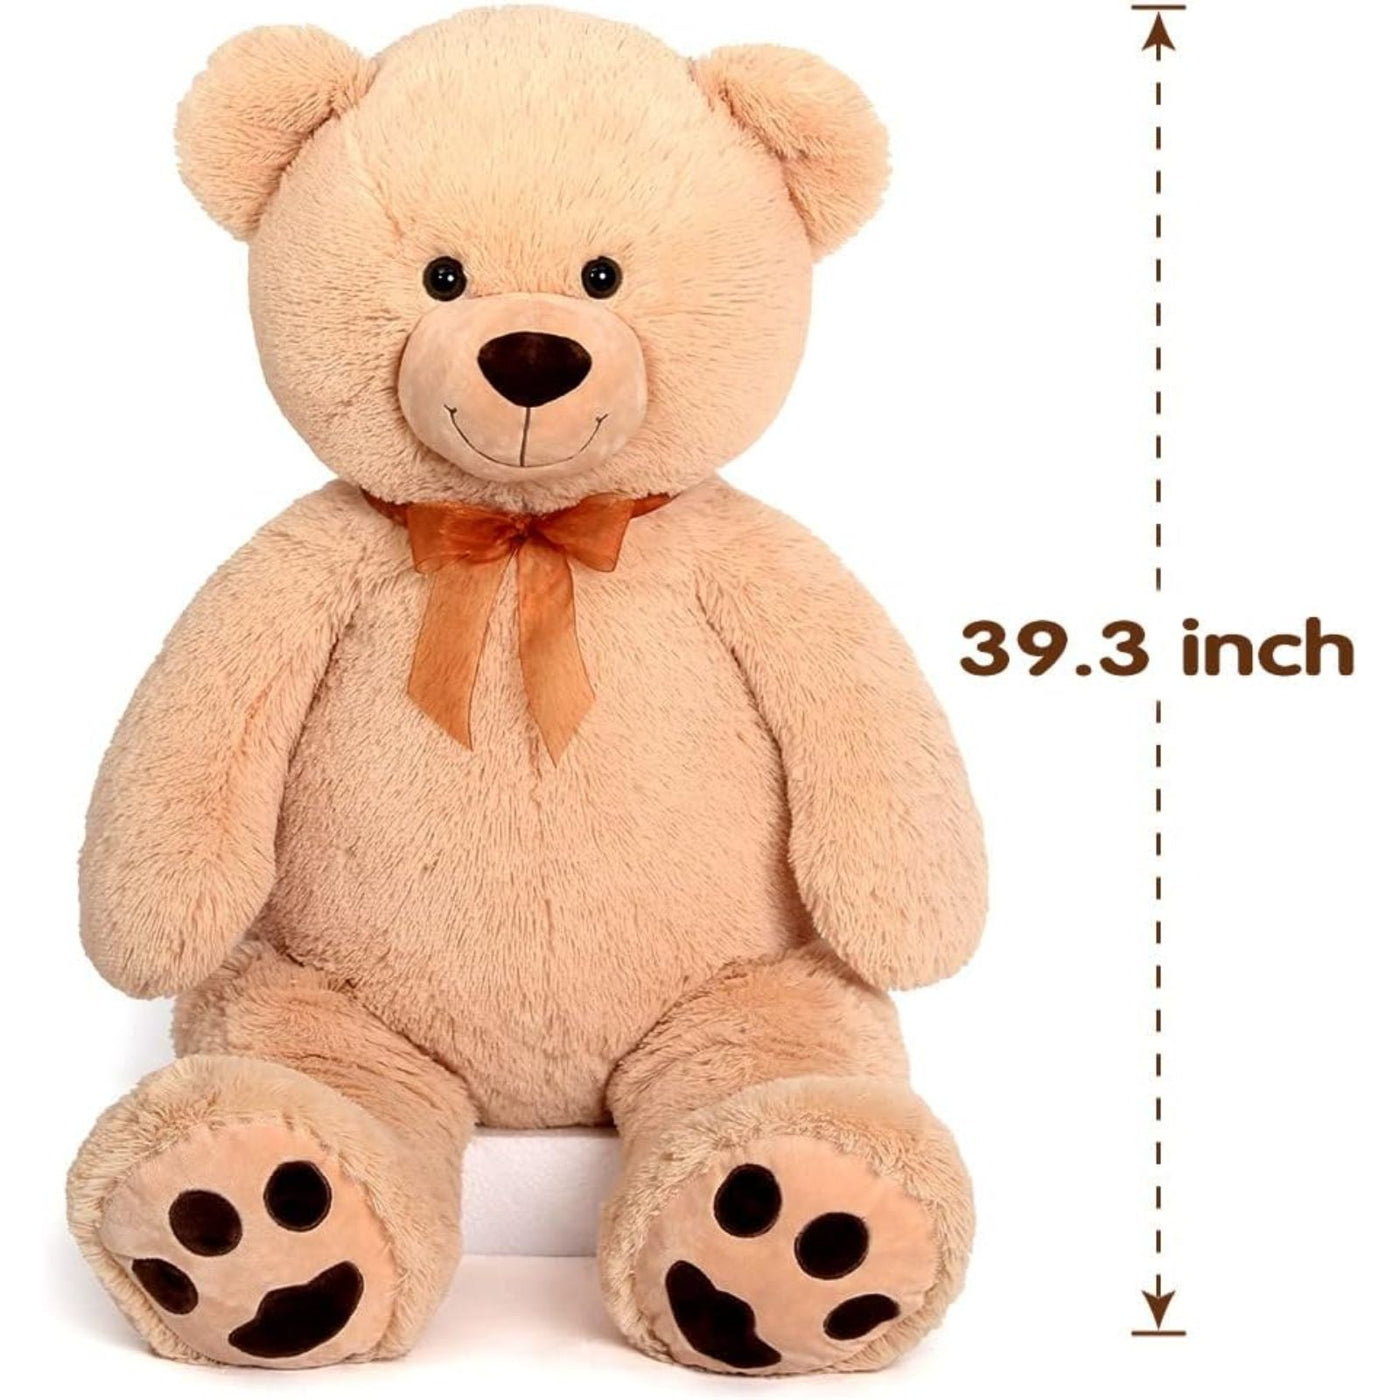 Big Teddy Bear Stuffed Animal Toy, Brown, 40 Inches